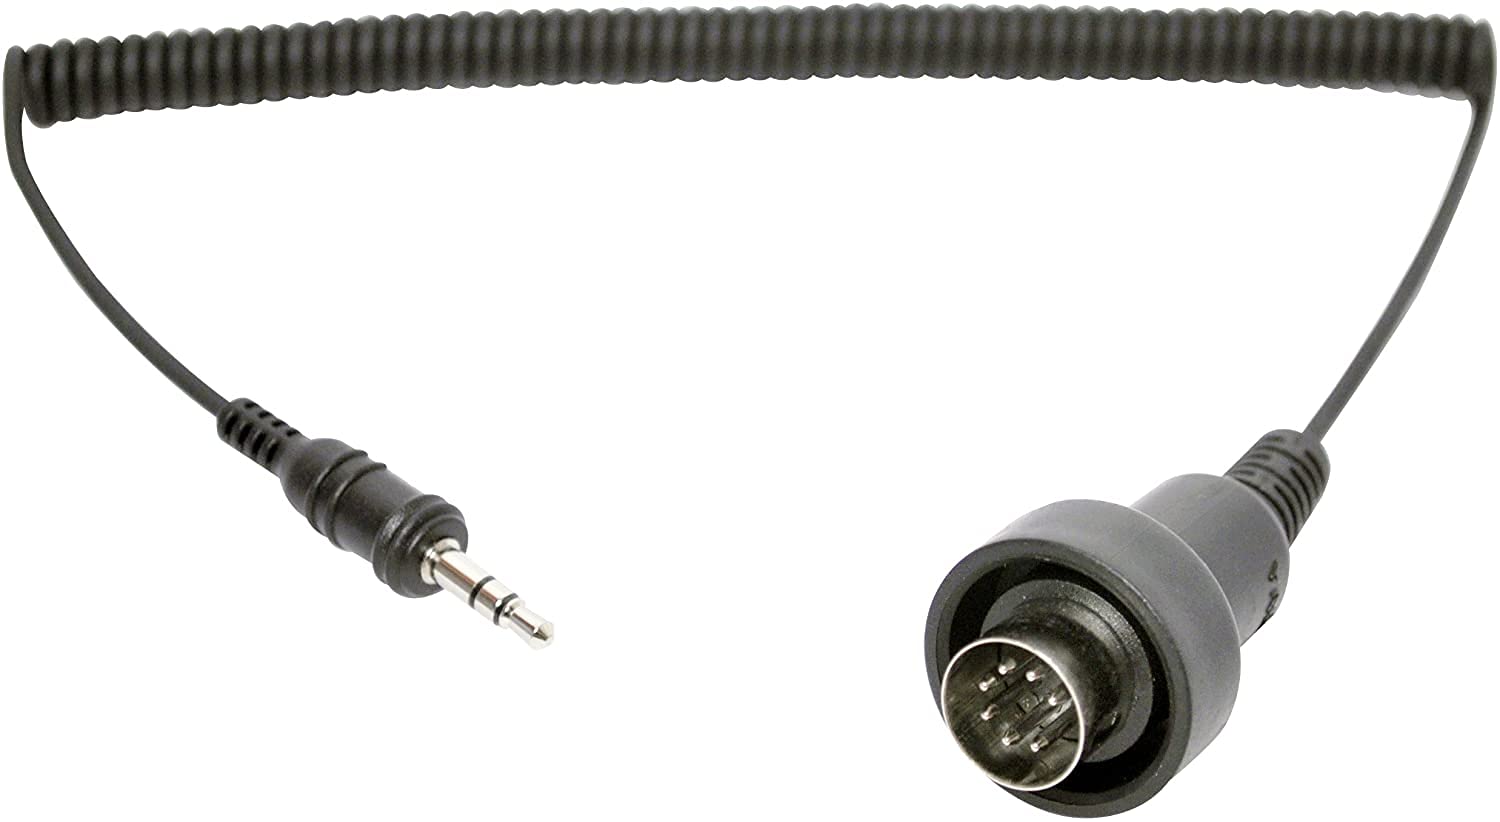 3.5mm Stereo Jack to 7 pin DIN Kabel für Kawasaki ab Baujahr 2008. Can-Am Spyder & Victory Vision 7 pin Audio System von Sena